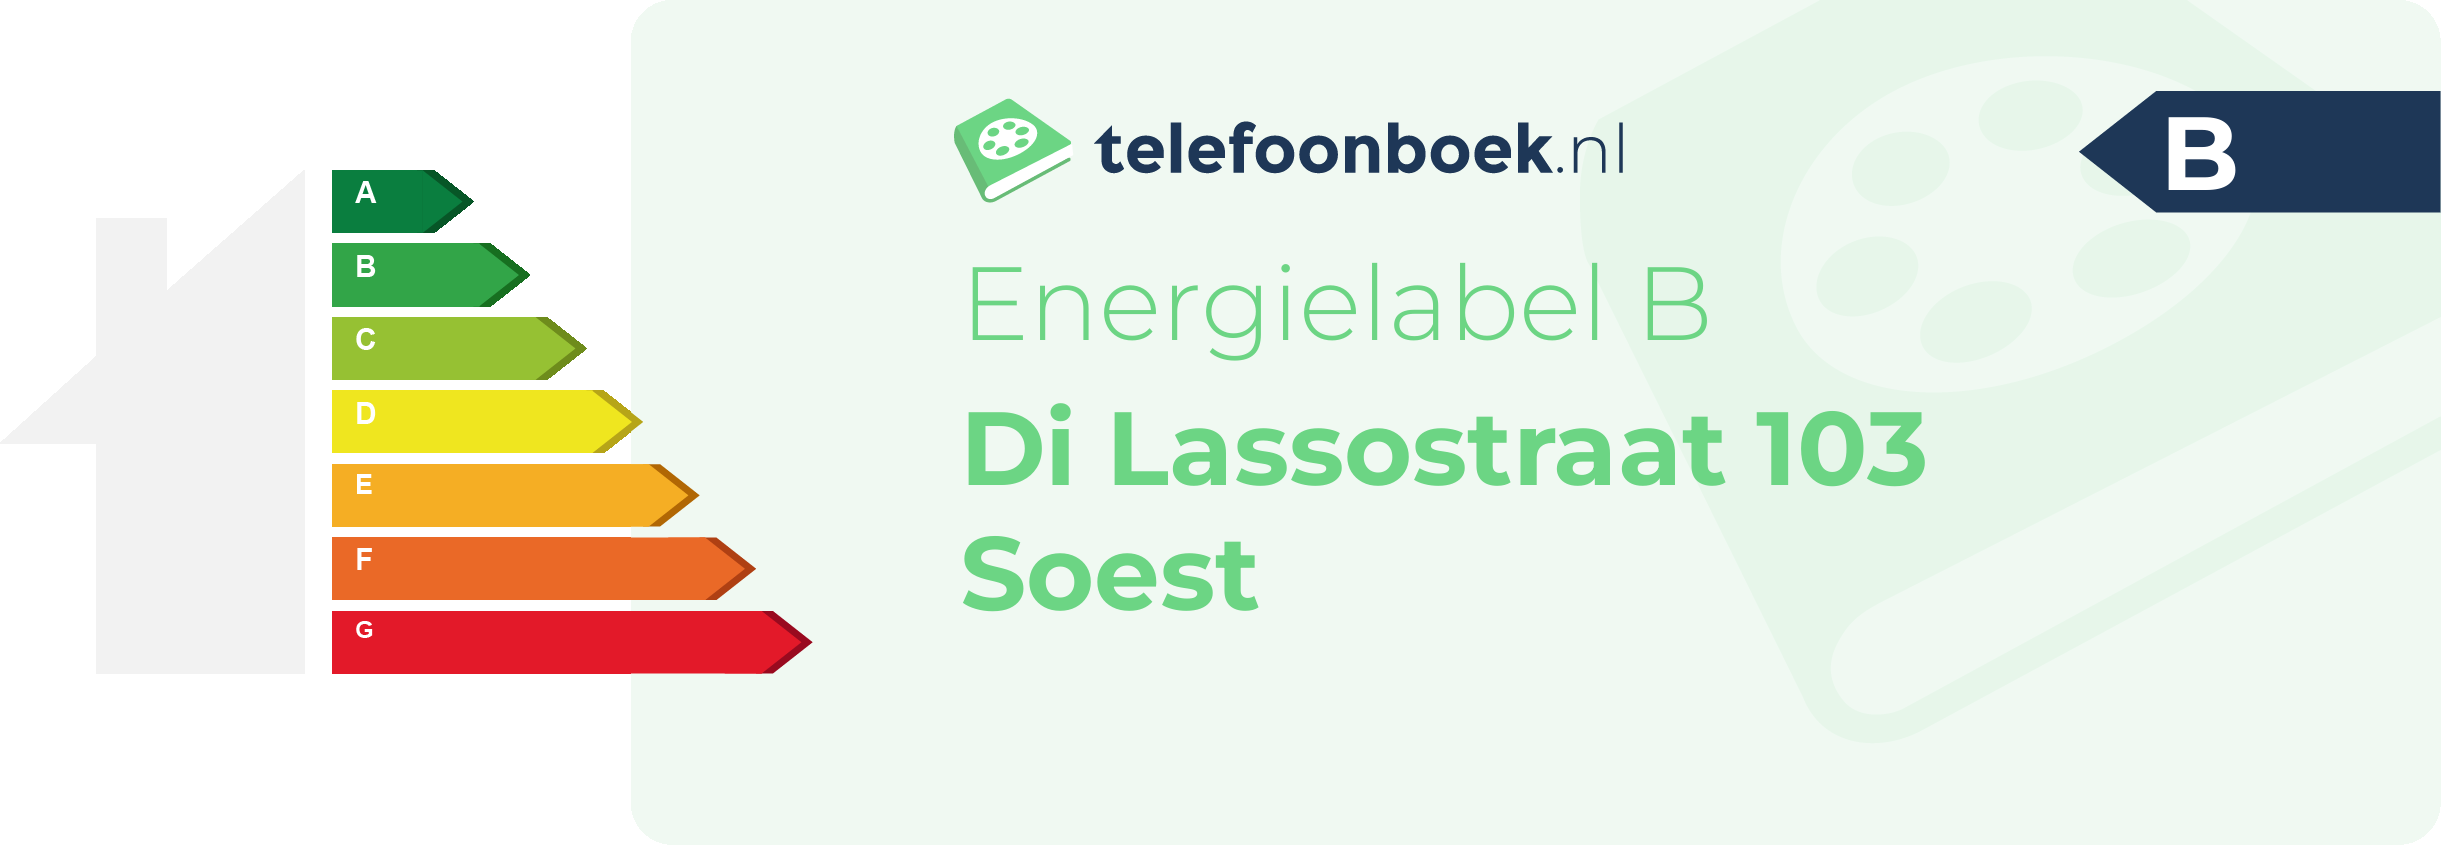 Energielabel Di Lassostraat 103 Soest